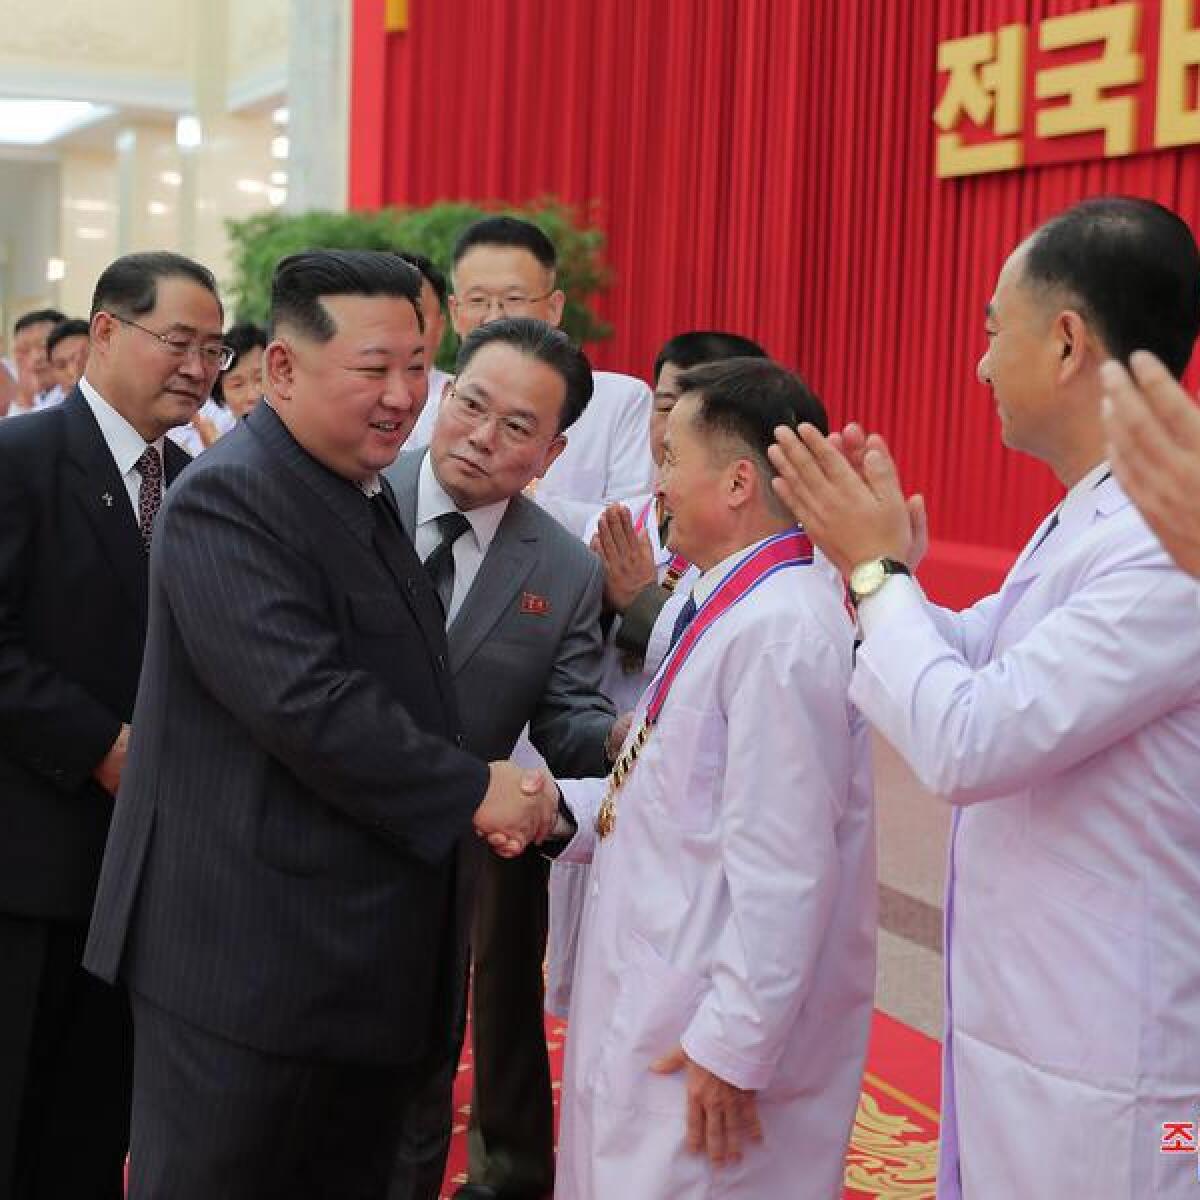 Kim Jong-un with officials